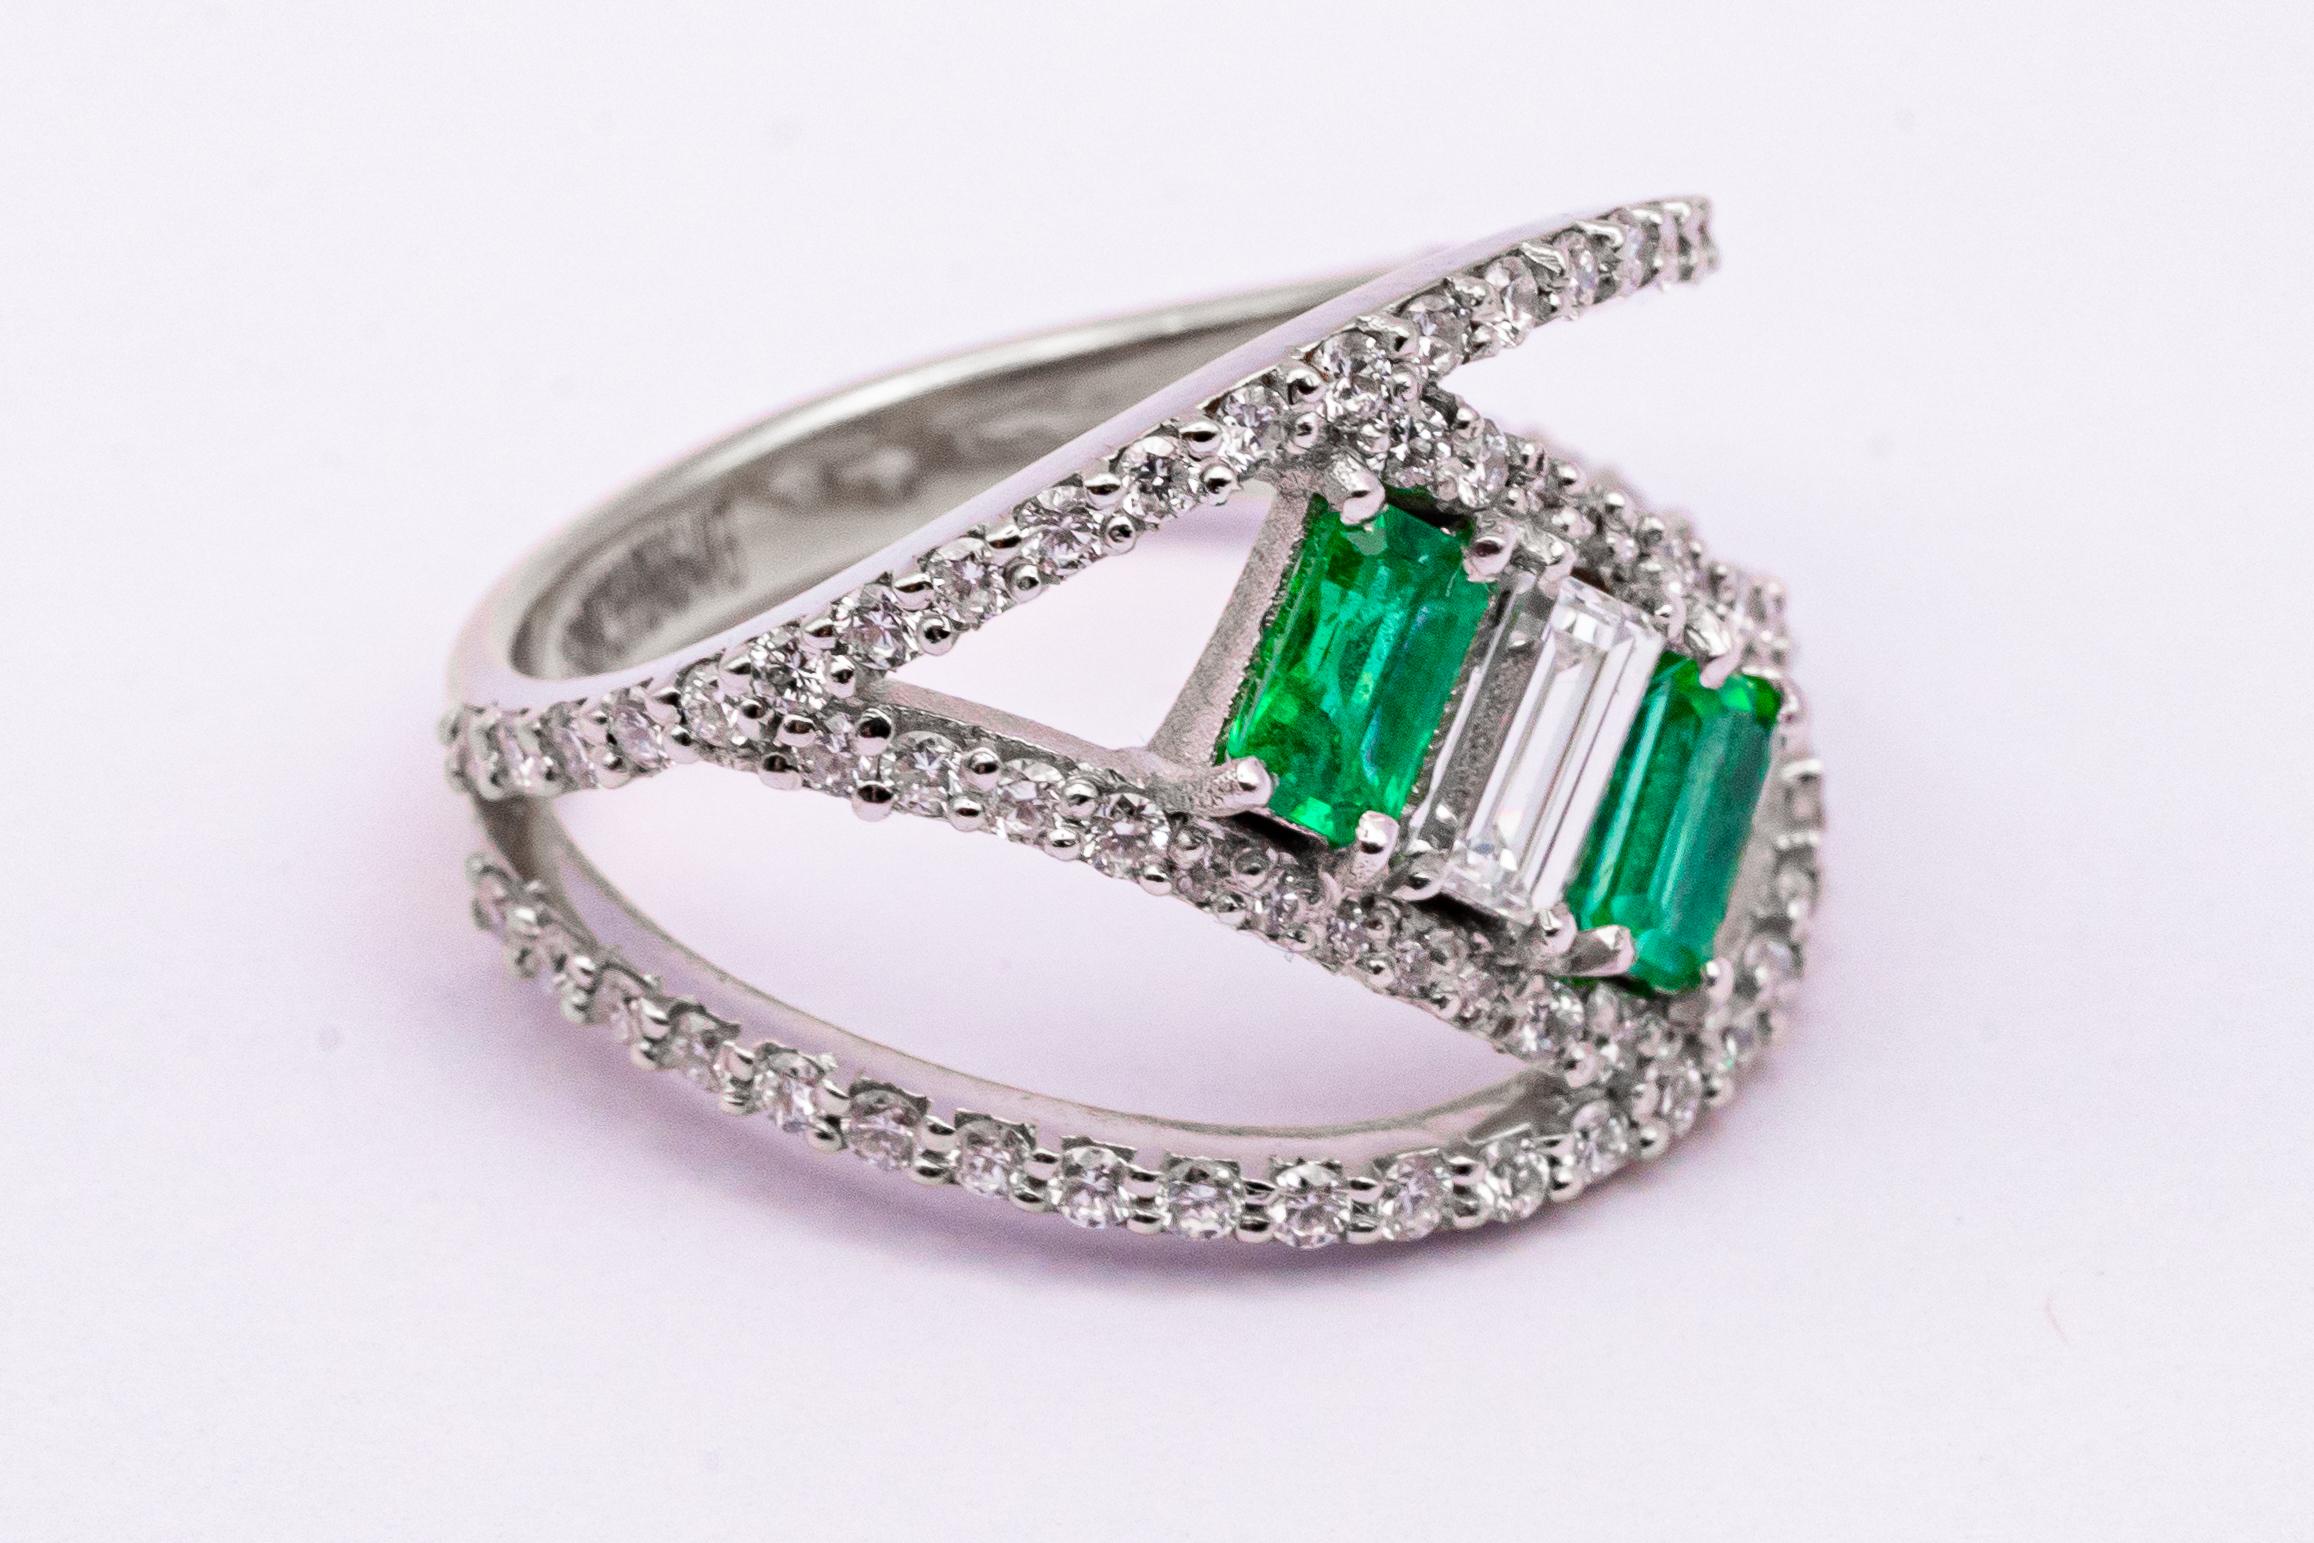 0.6 carat emerald cut diamond